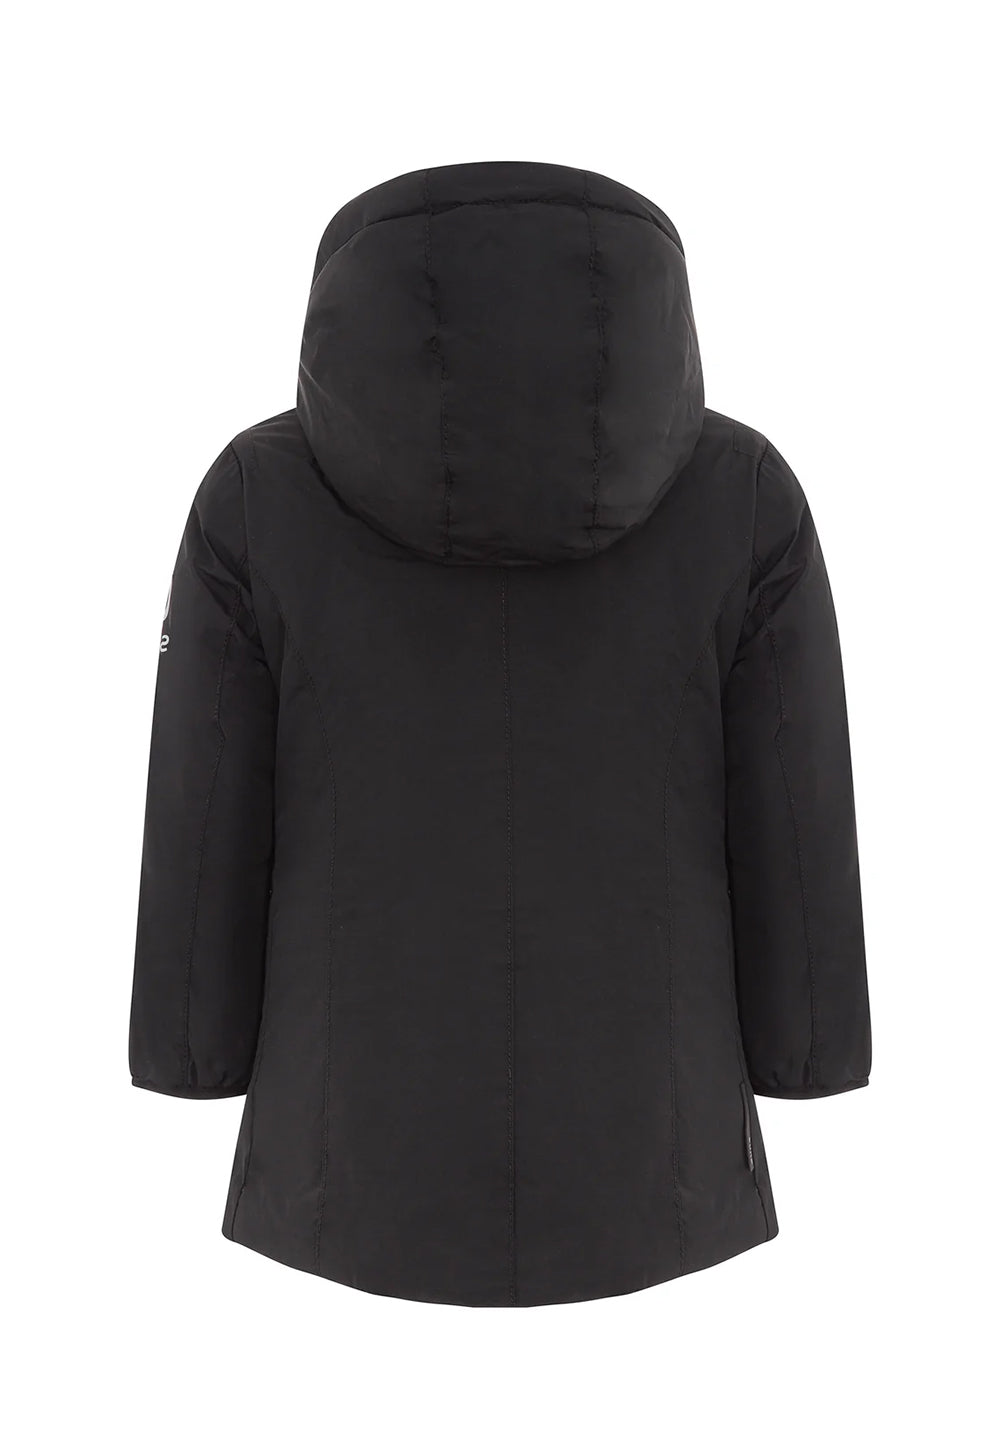 Black jacket for girls